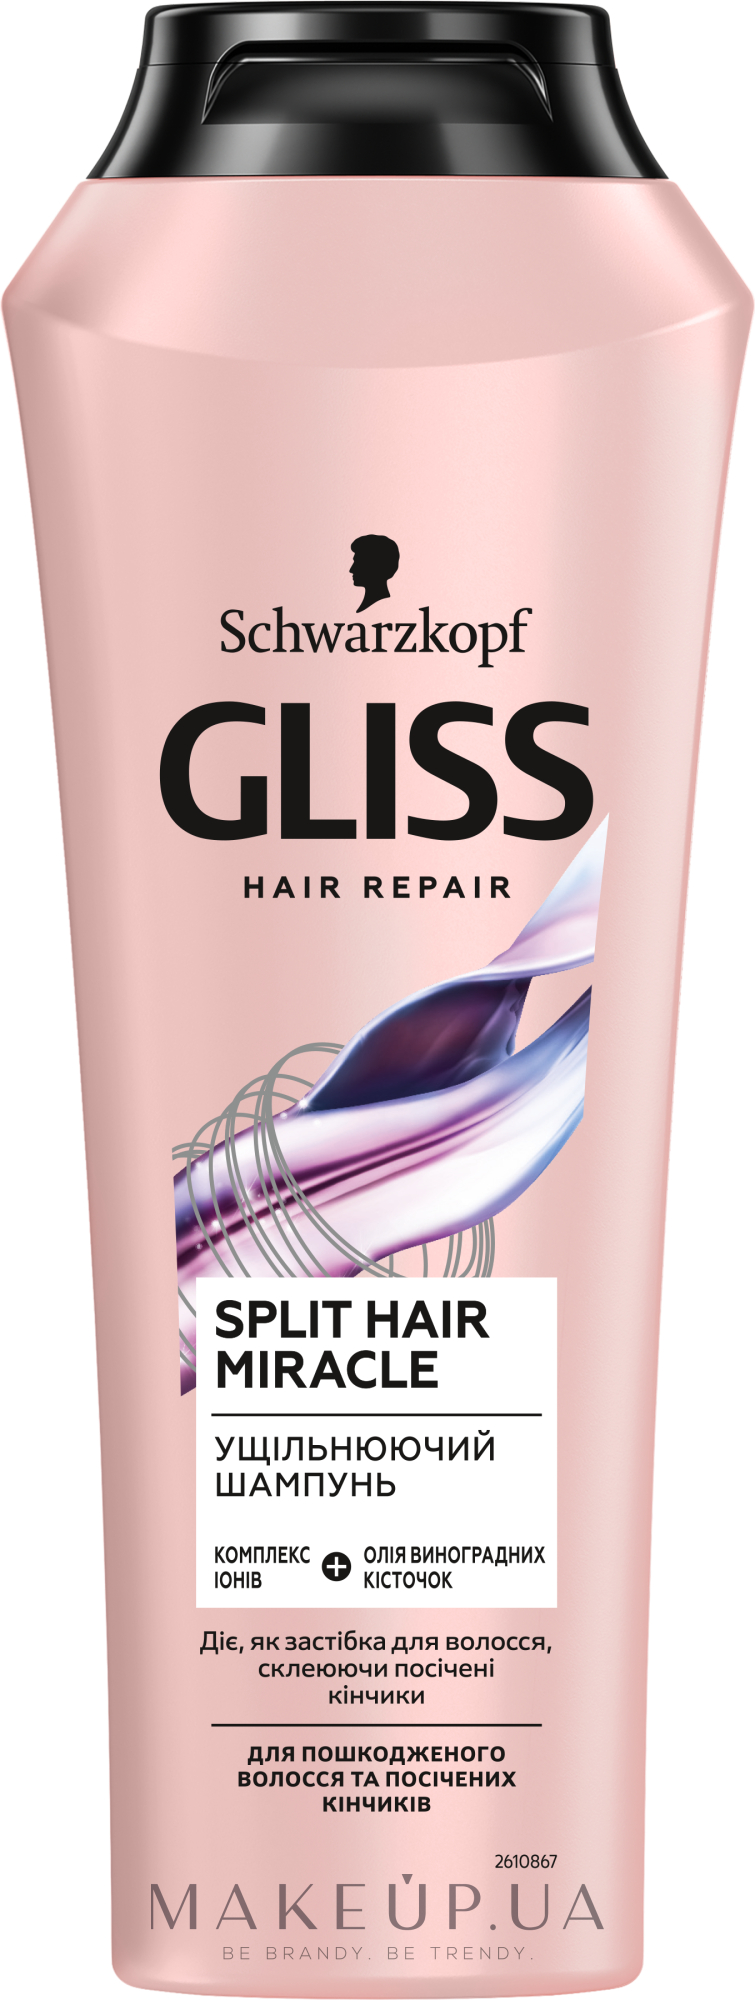 Ущільнювальний шампунь для пошкодженого волосся та посічених кінчиків - GLISS Split Hair Miracle — фото 250ml